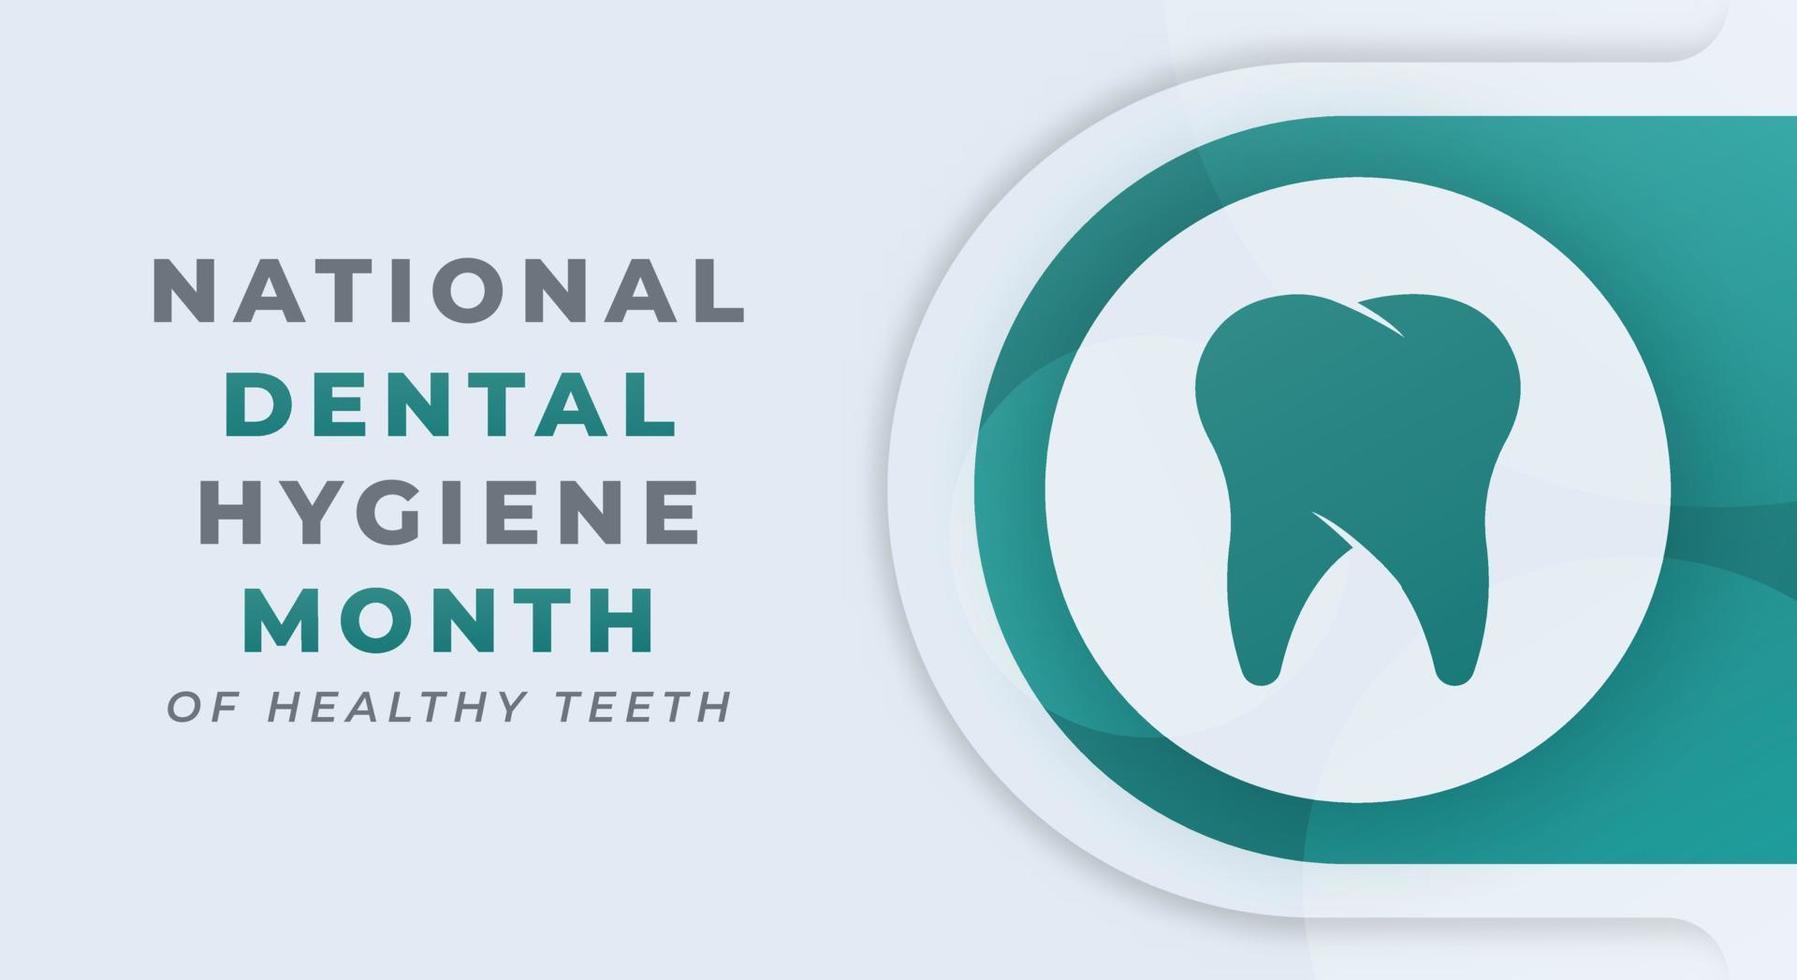 Lycklig nationell dental hygien månad firande vektor design illustration för bakgrund, affisch, baner, reklam, hälsning kort